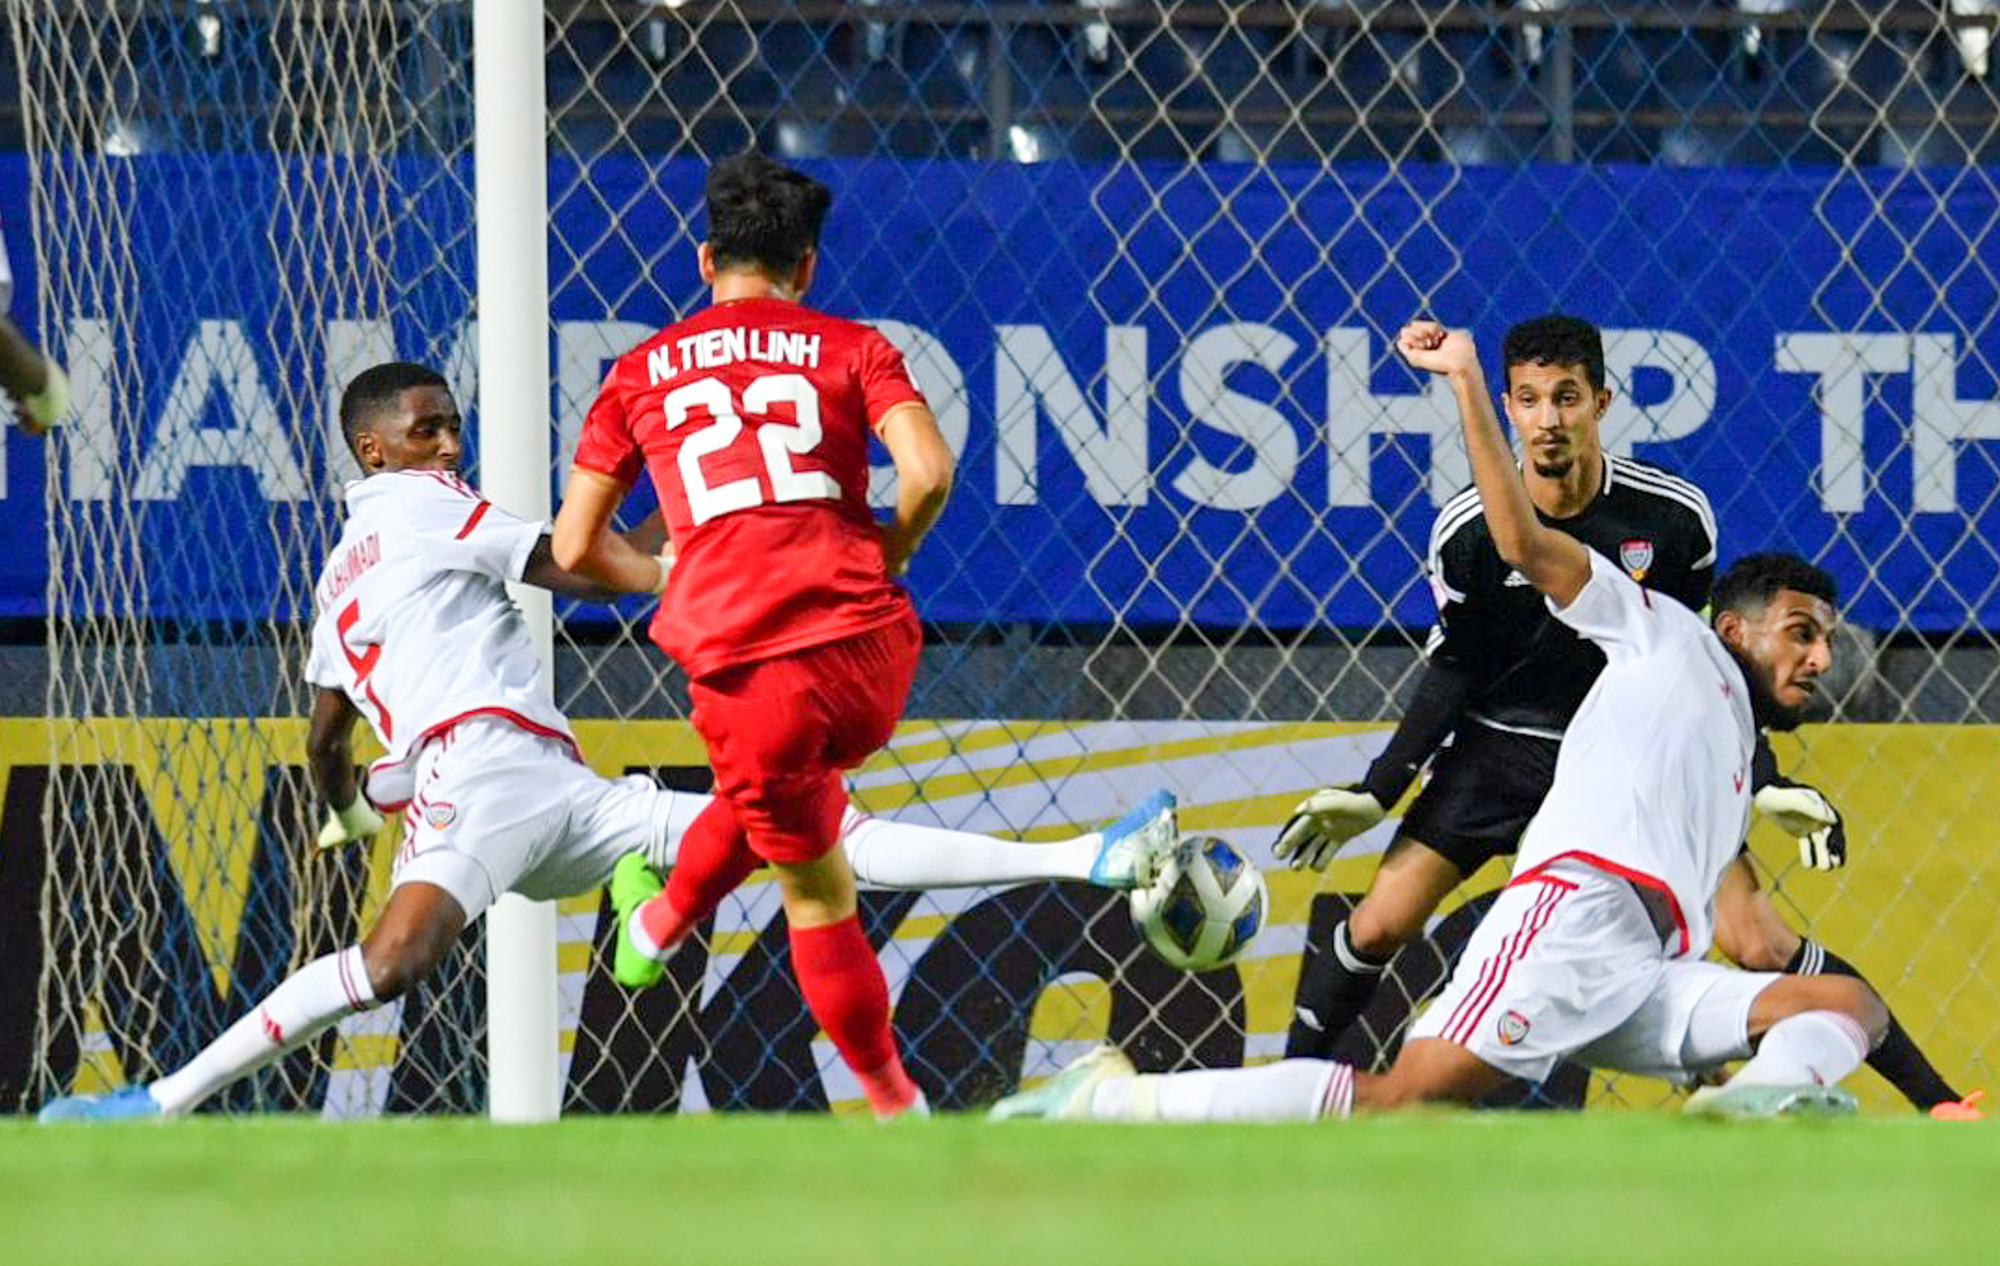 Cận cảnh Quang Hải bị cầu thủ U23 UAE đạp chân nguy hiểm từ phía sau, suýt gặp chấn thương nặng  - Ảnh 8.